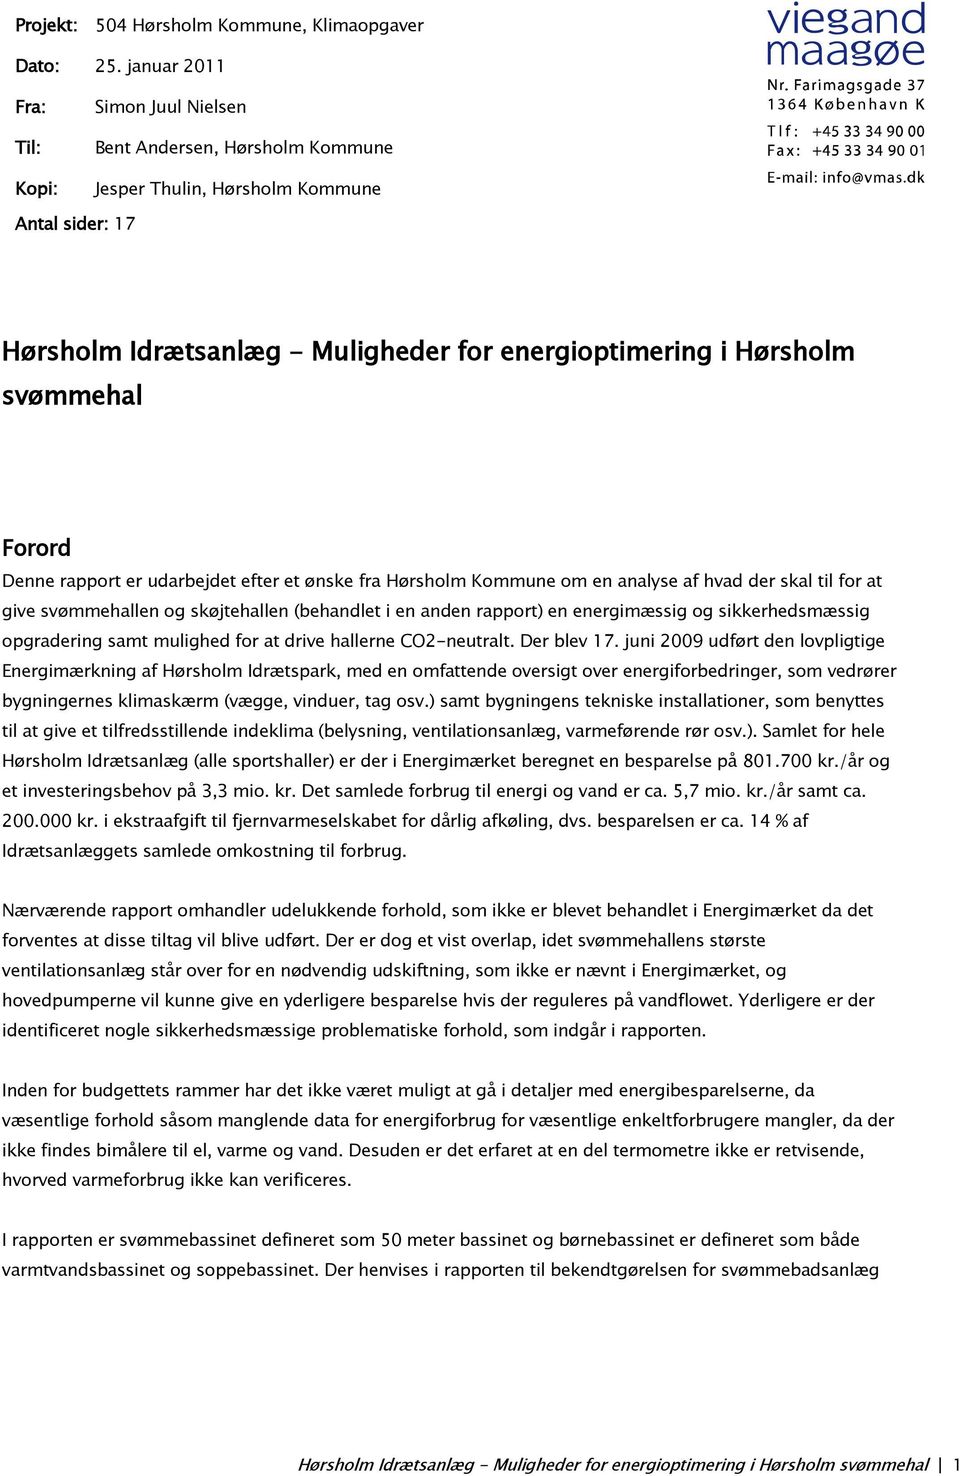 svømmehal Forord Denne rapport er udarbejdet efter et ønske fra Hørsholm Kommune om en analyse af hvad der skal til for at give svømmehallen og skøjtehallen (behandlet i en anden rapport) en